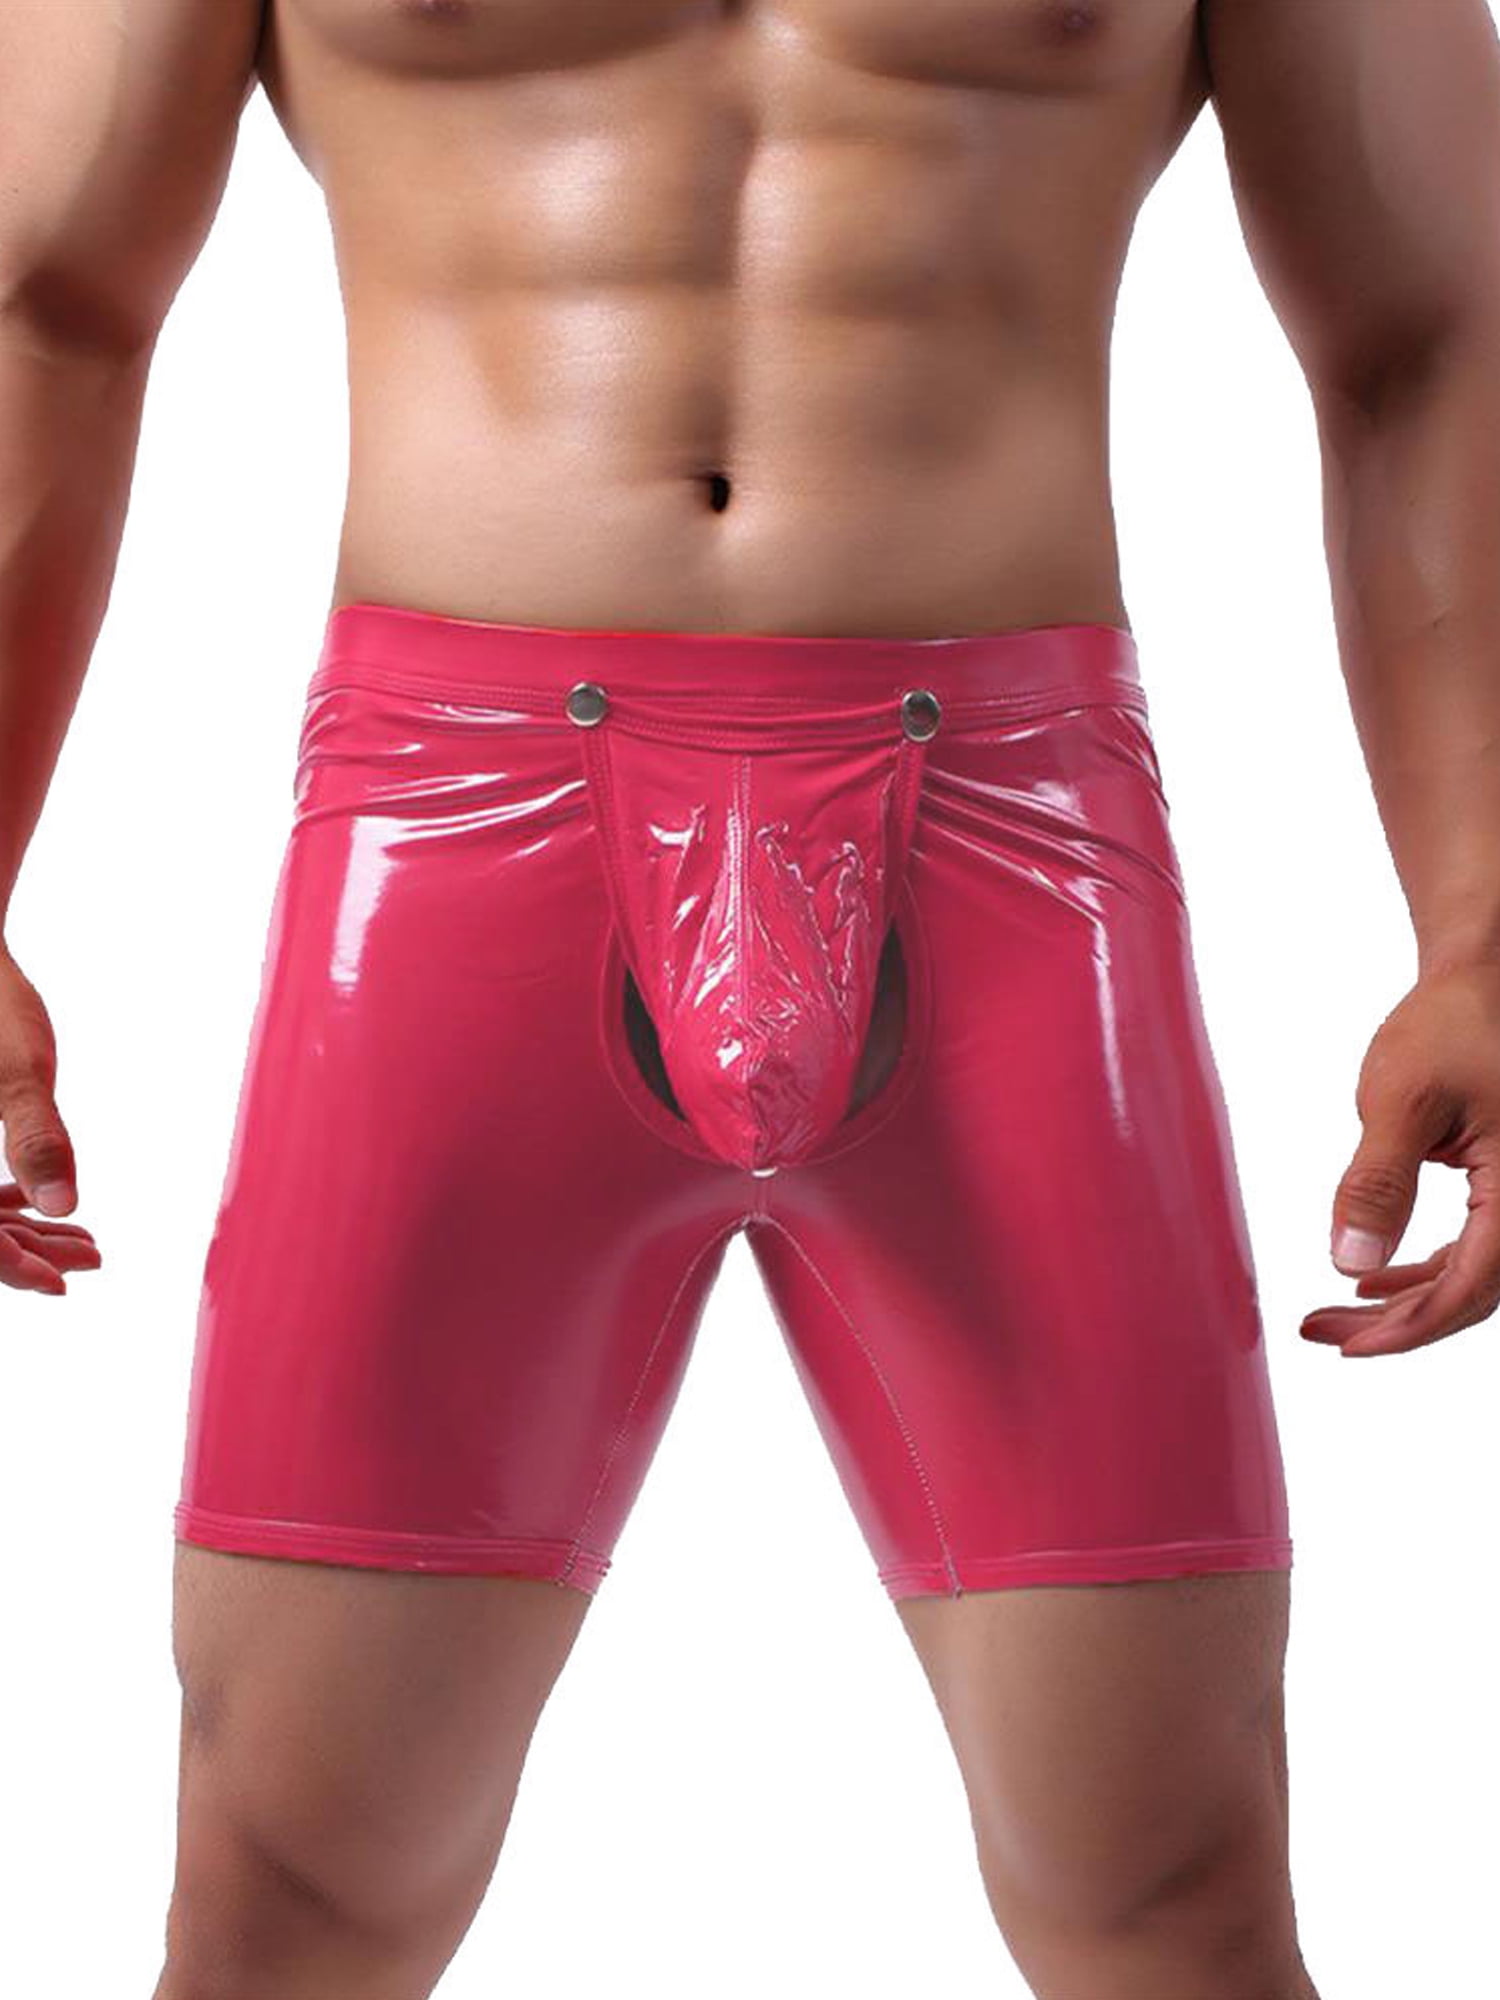 Mens PU Leather Boxer Trunks Mesh Pouch Shorts Briefs Underpants Underwear Pants